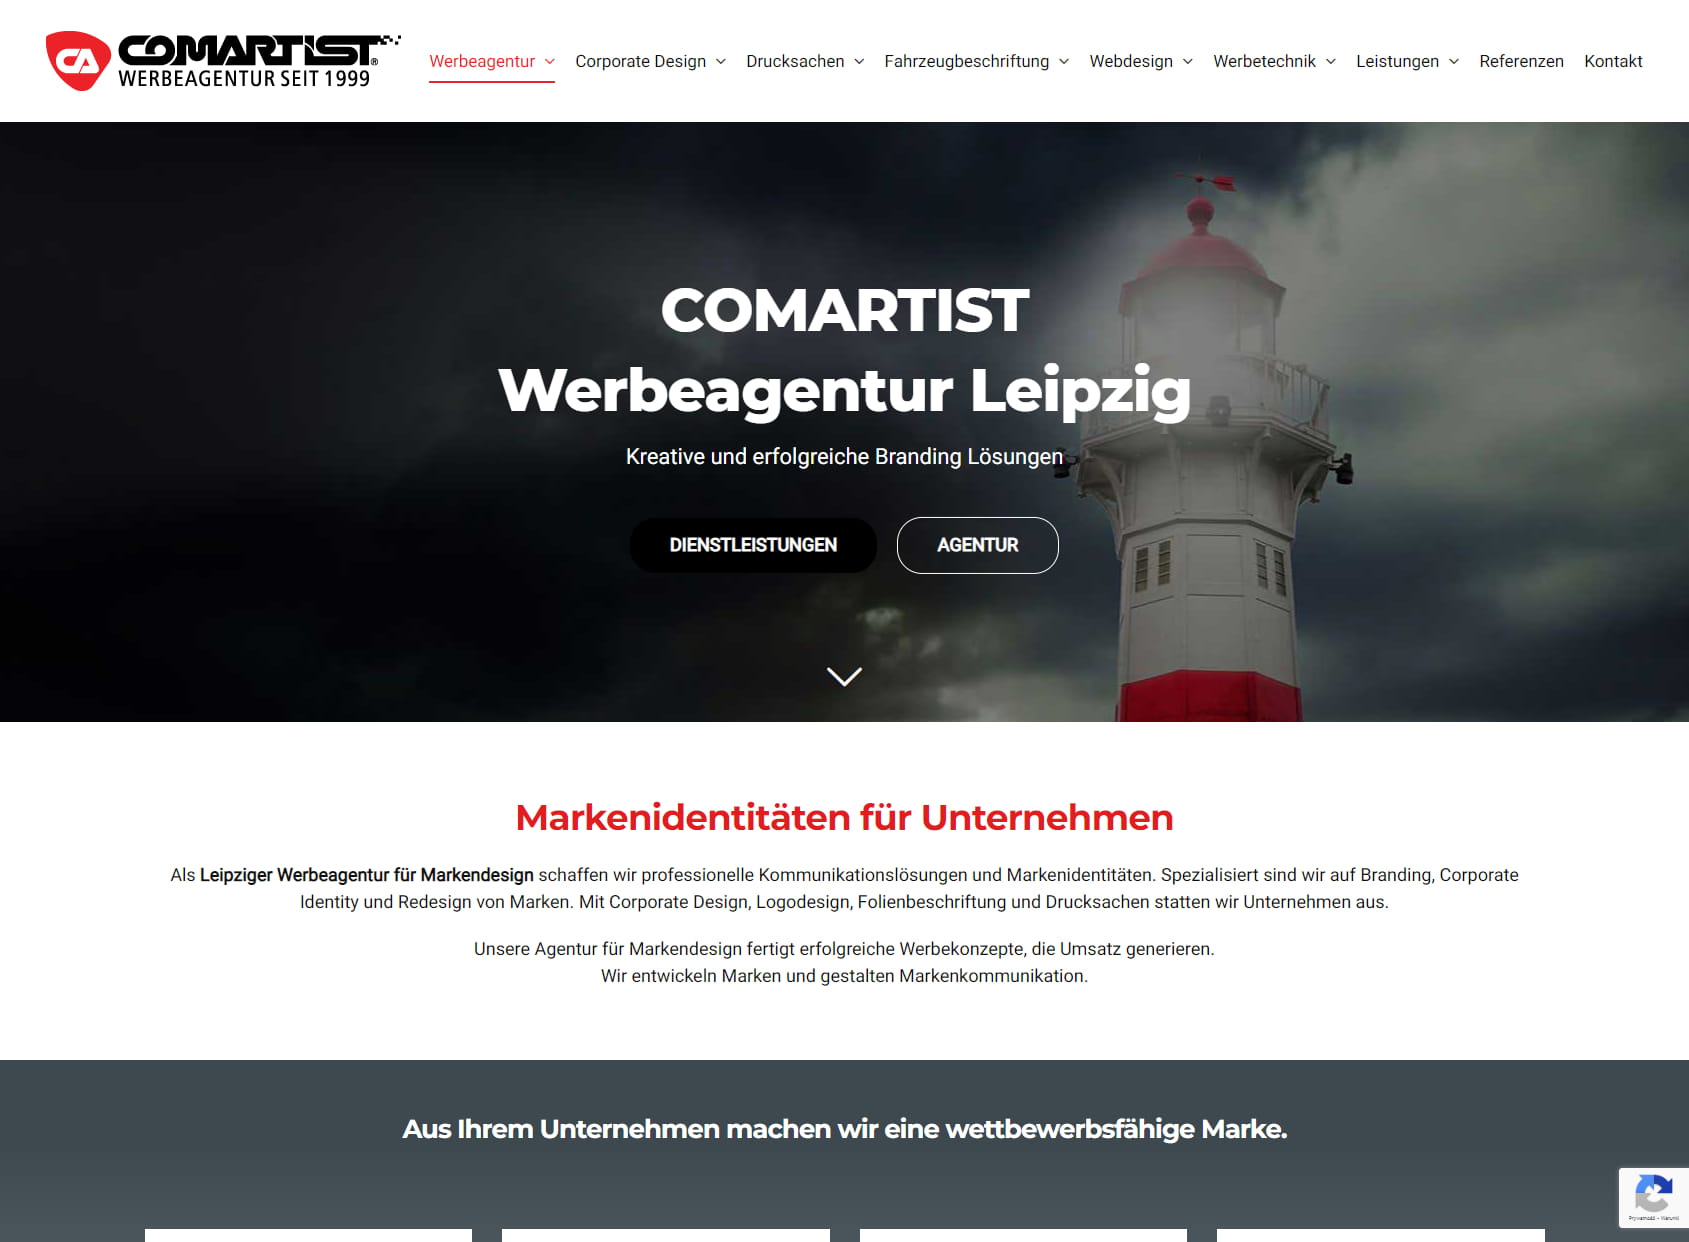 COMARTIST Werbeagentur Leipzig